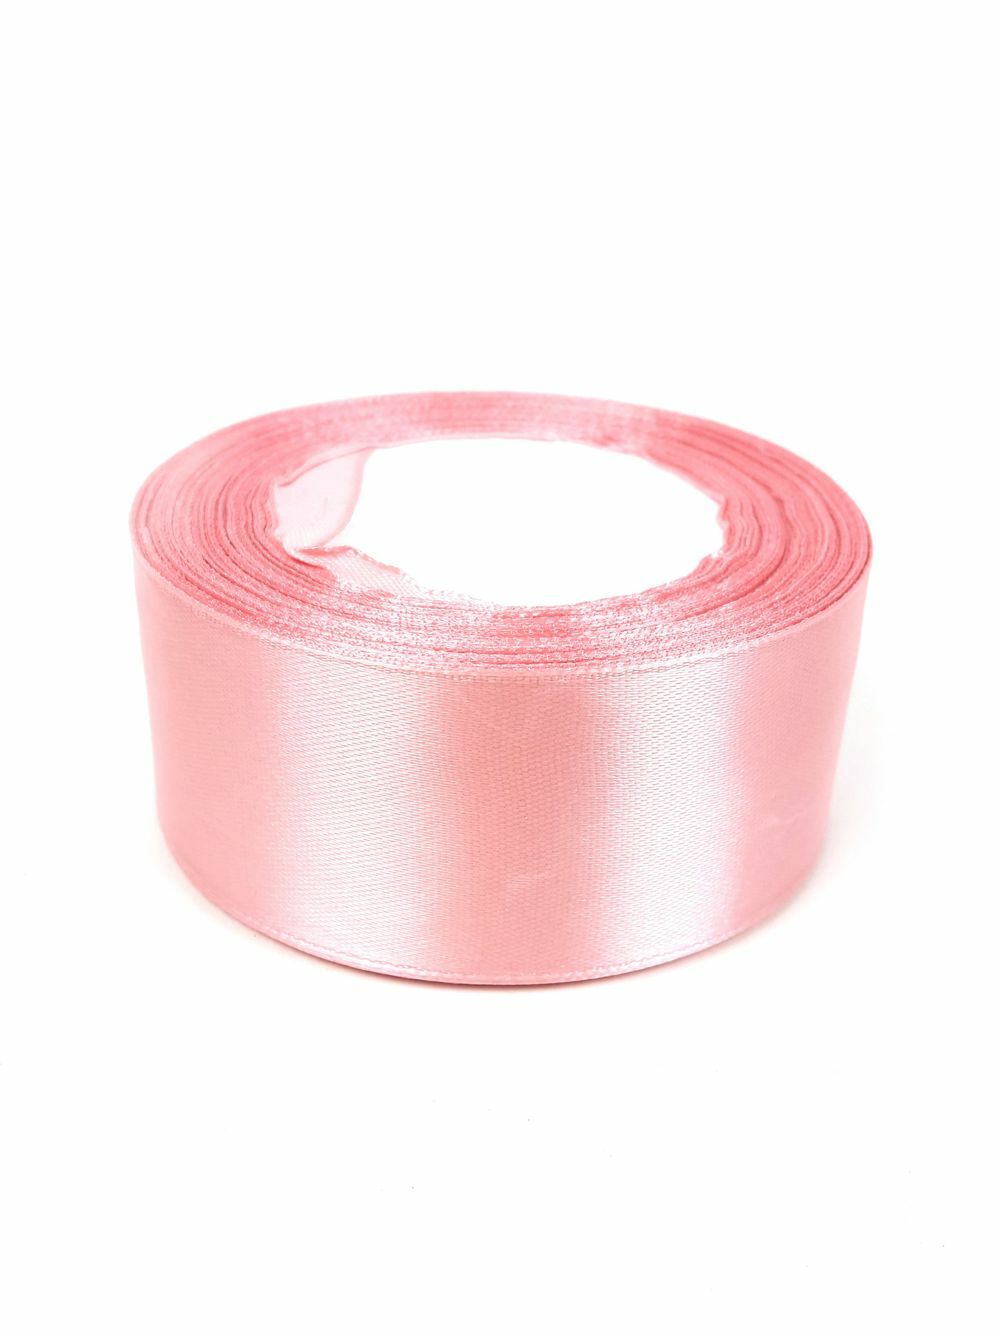 40 mm-es szatén szalag - Fáradt Rózsaszín